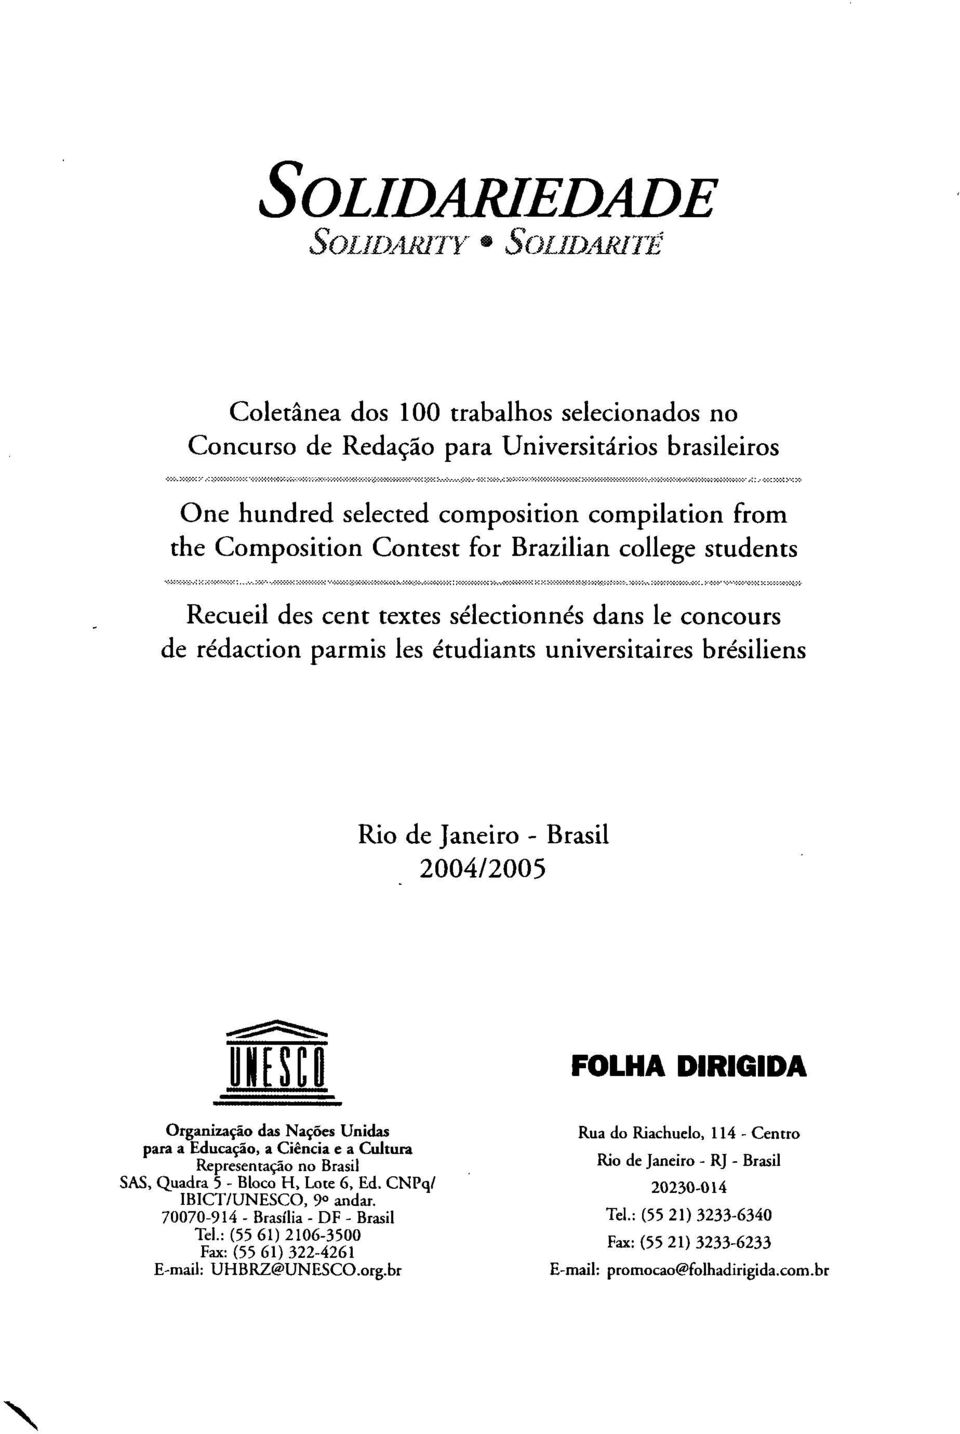 Organizaçâo das Naçôes Unidas para a Educaçâo, a Ciencia e a Cultura Representaçâo no Brasil SAS, Quadra 5 - Bloco H, Lote 6, Ed. CNPq/ IB1CT/UNESCO, 9 o andar. 70070-914 - Brasilia - DF - Brasil Tel.